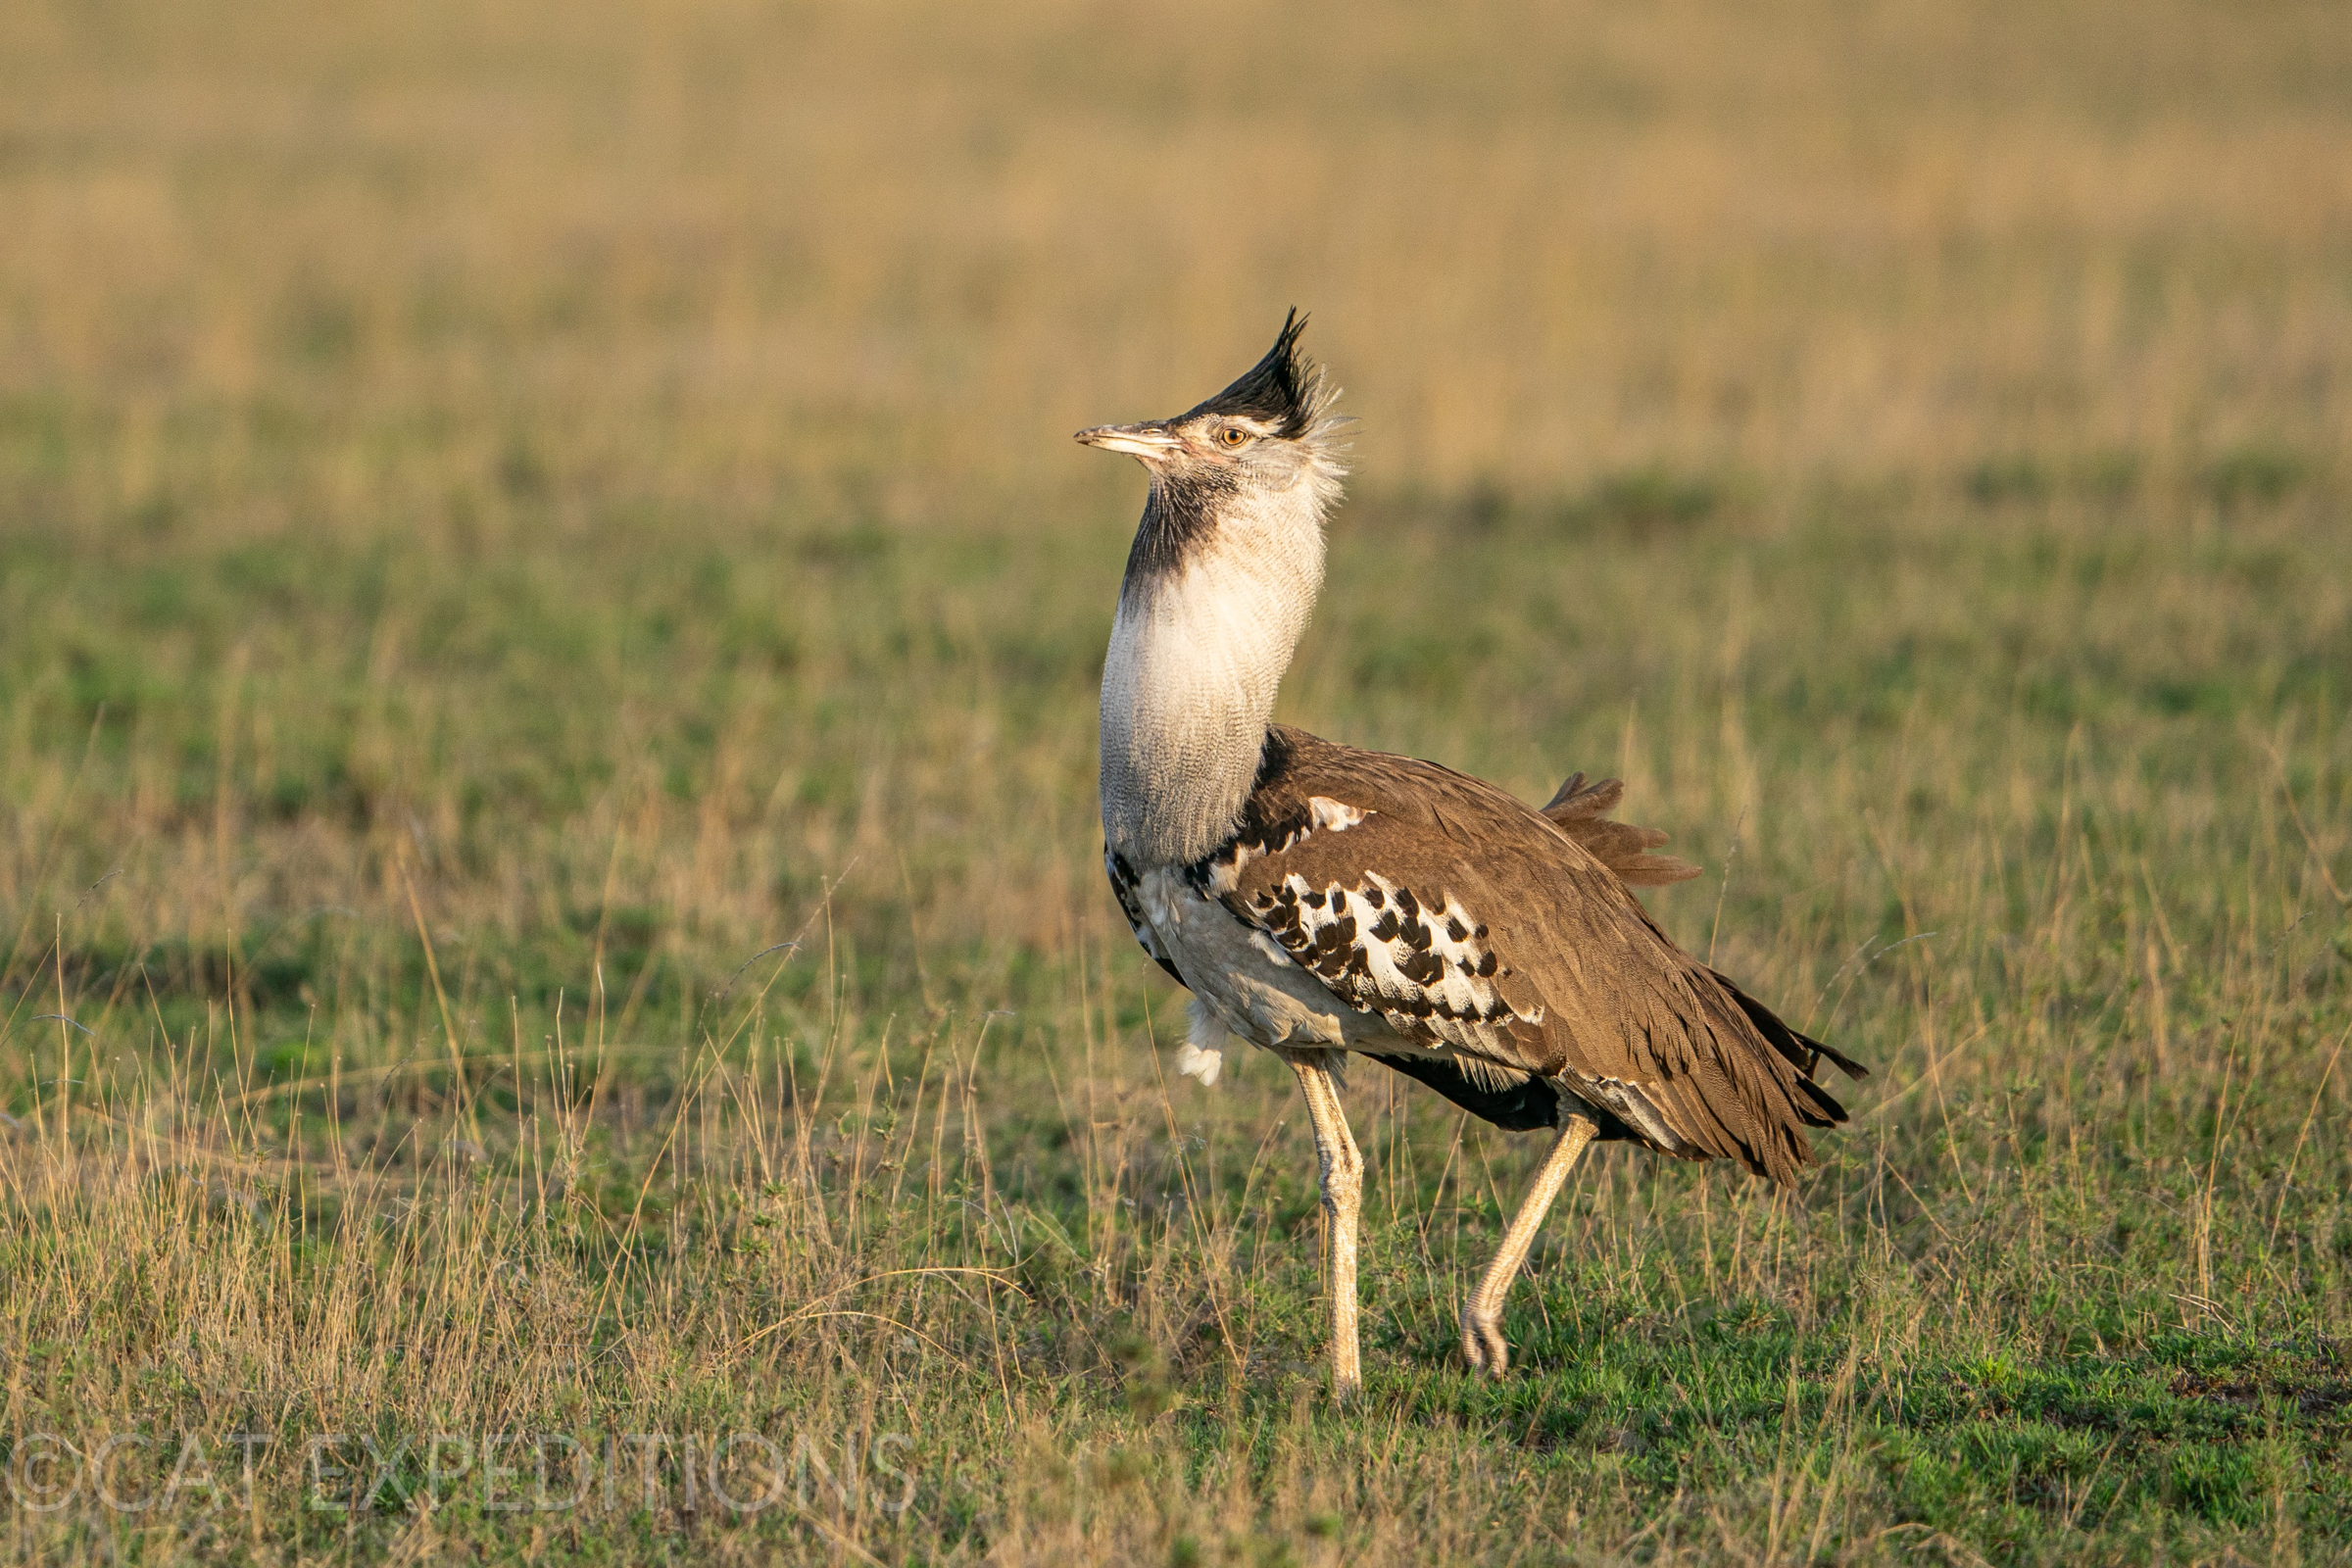 Kori Bustard in Serengeti, Tanzania